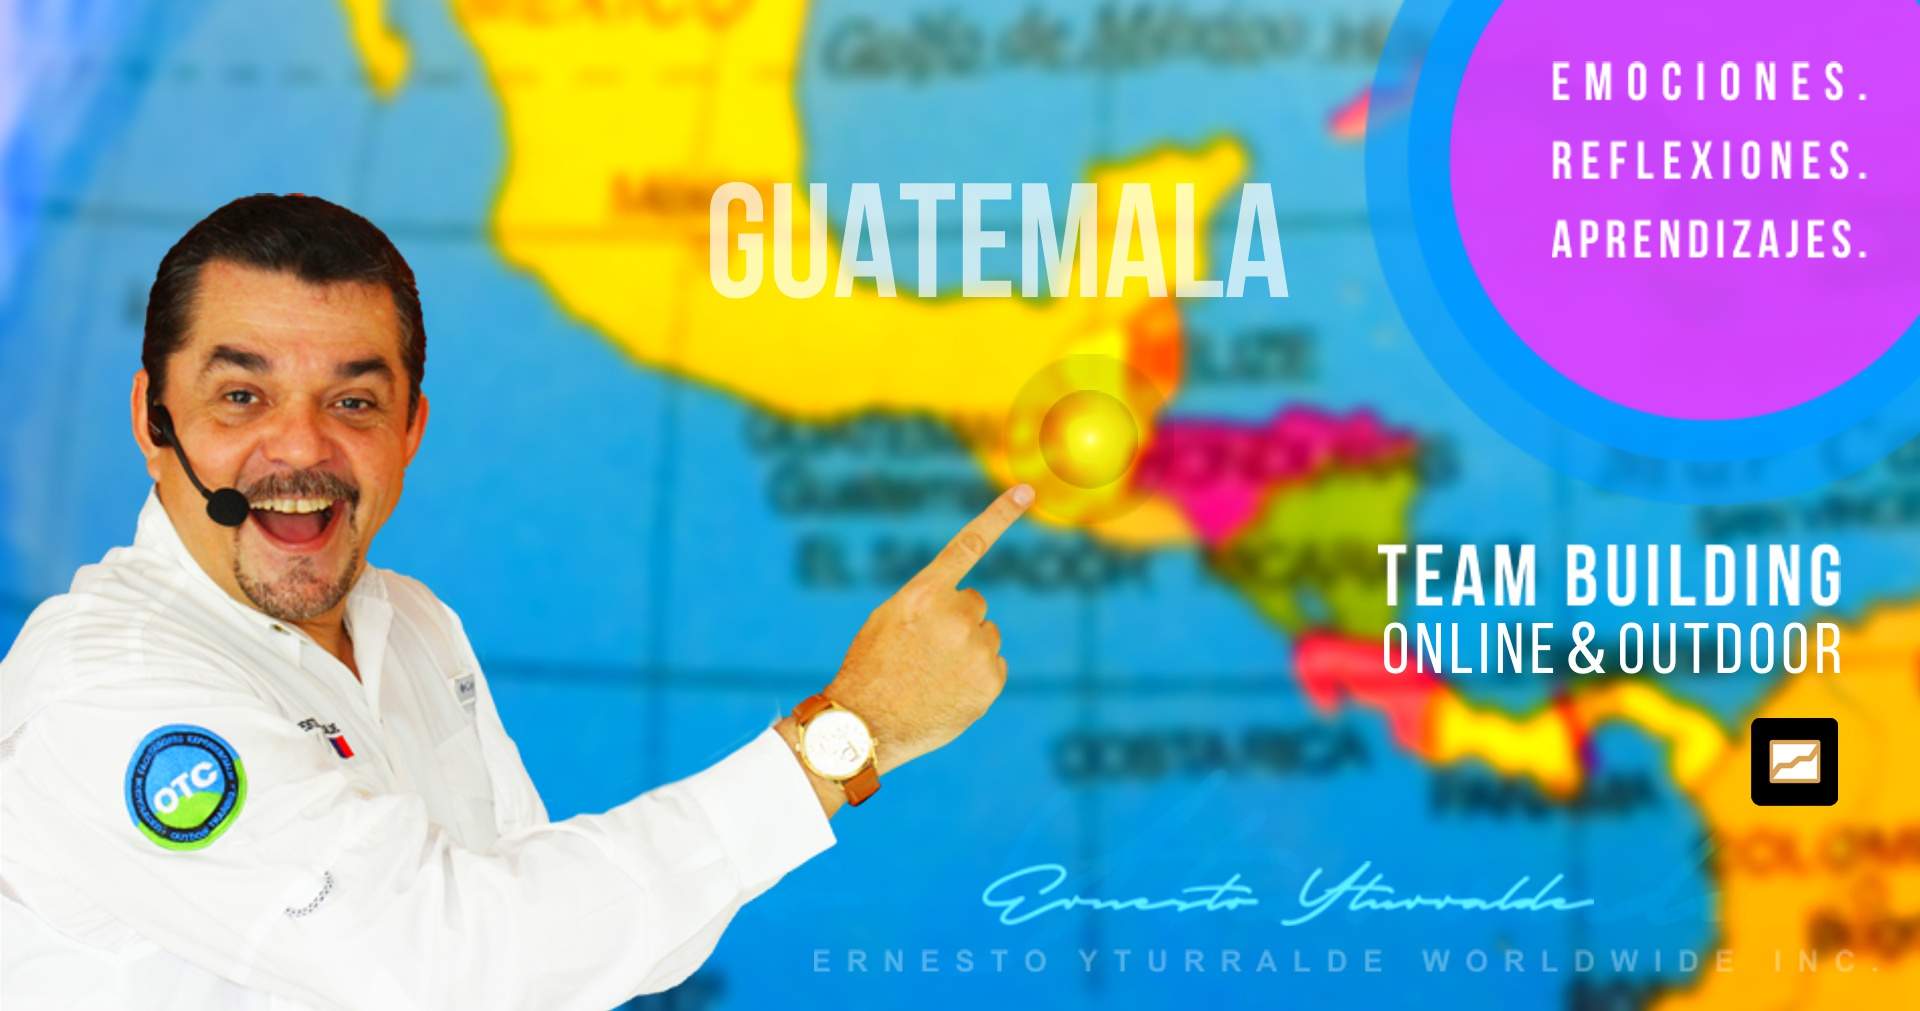 Guatemala Team Building Online por Zoom para el desarrollo de equipos de trabajo